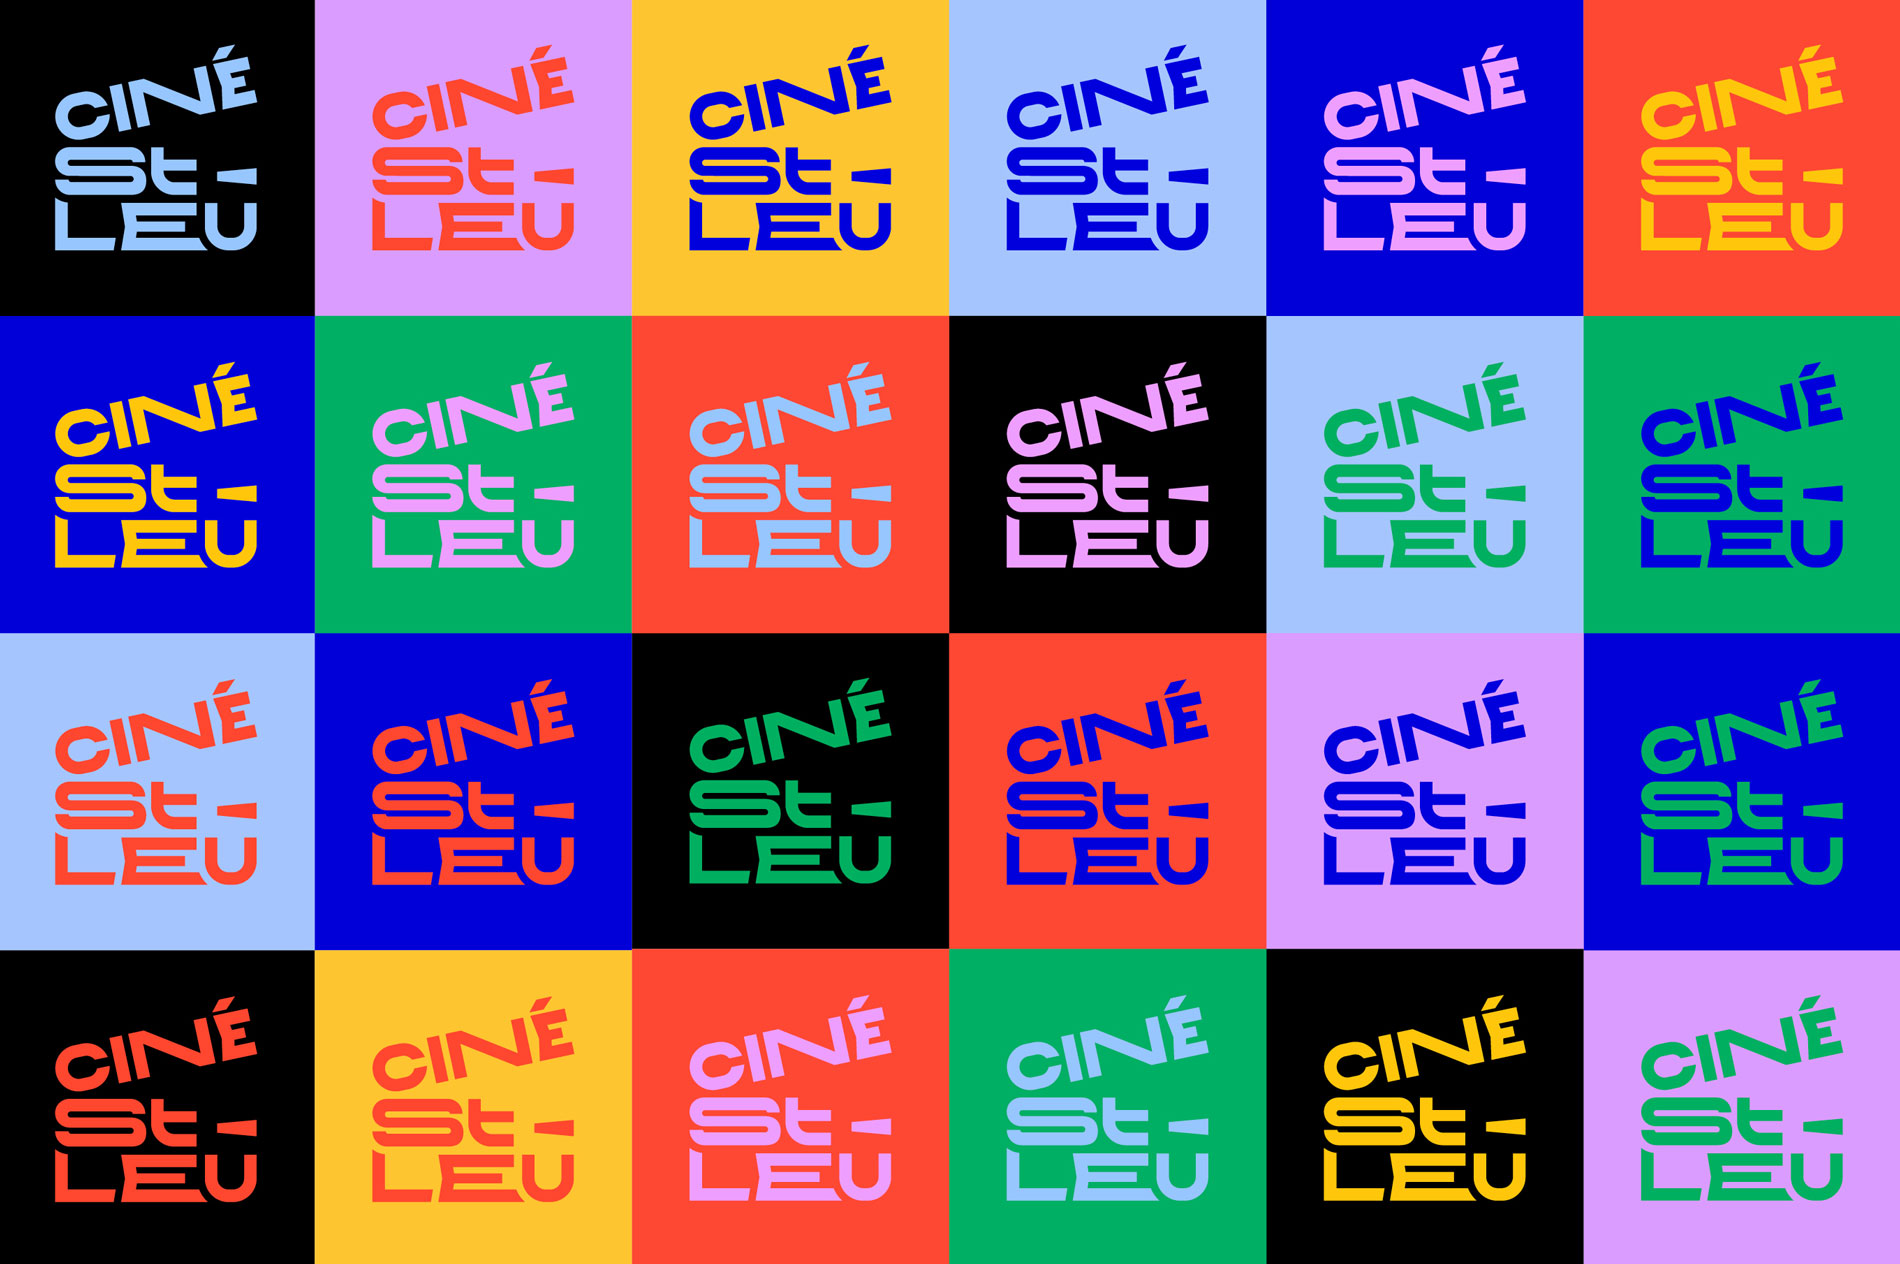 mosaïque de logos du ciné st leu dans toutes ses variantes couleurs. Le logo a été créé par le studio de design graphique Okowoko à Amiens, dans les Hauts de France